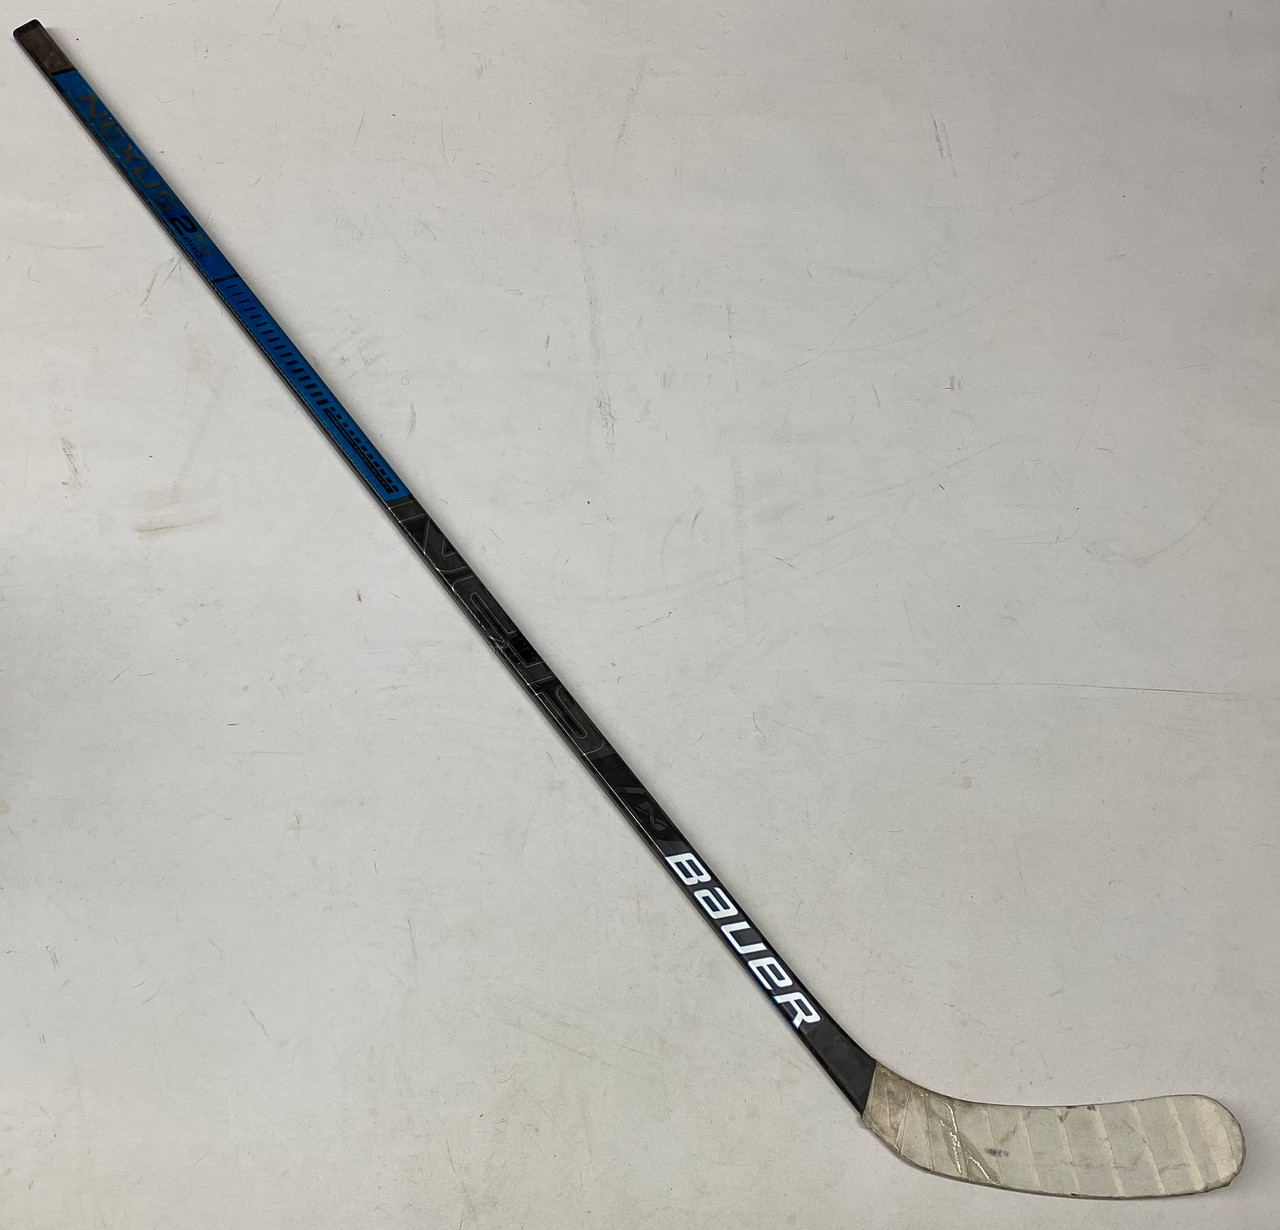 Refurb* Bauer Nexus 2N Pro LH Pro Stock Stick Grip Used P92 82 Flex ARD (2)  - DK's Hockey Shop